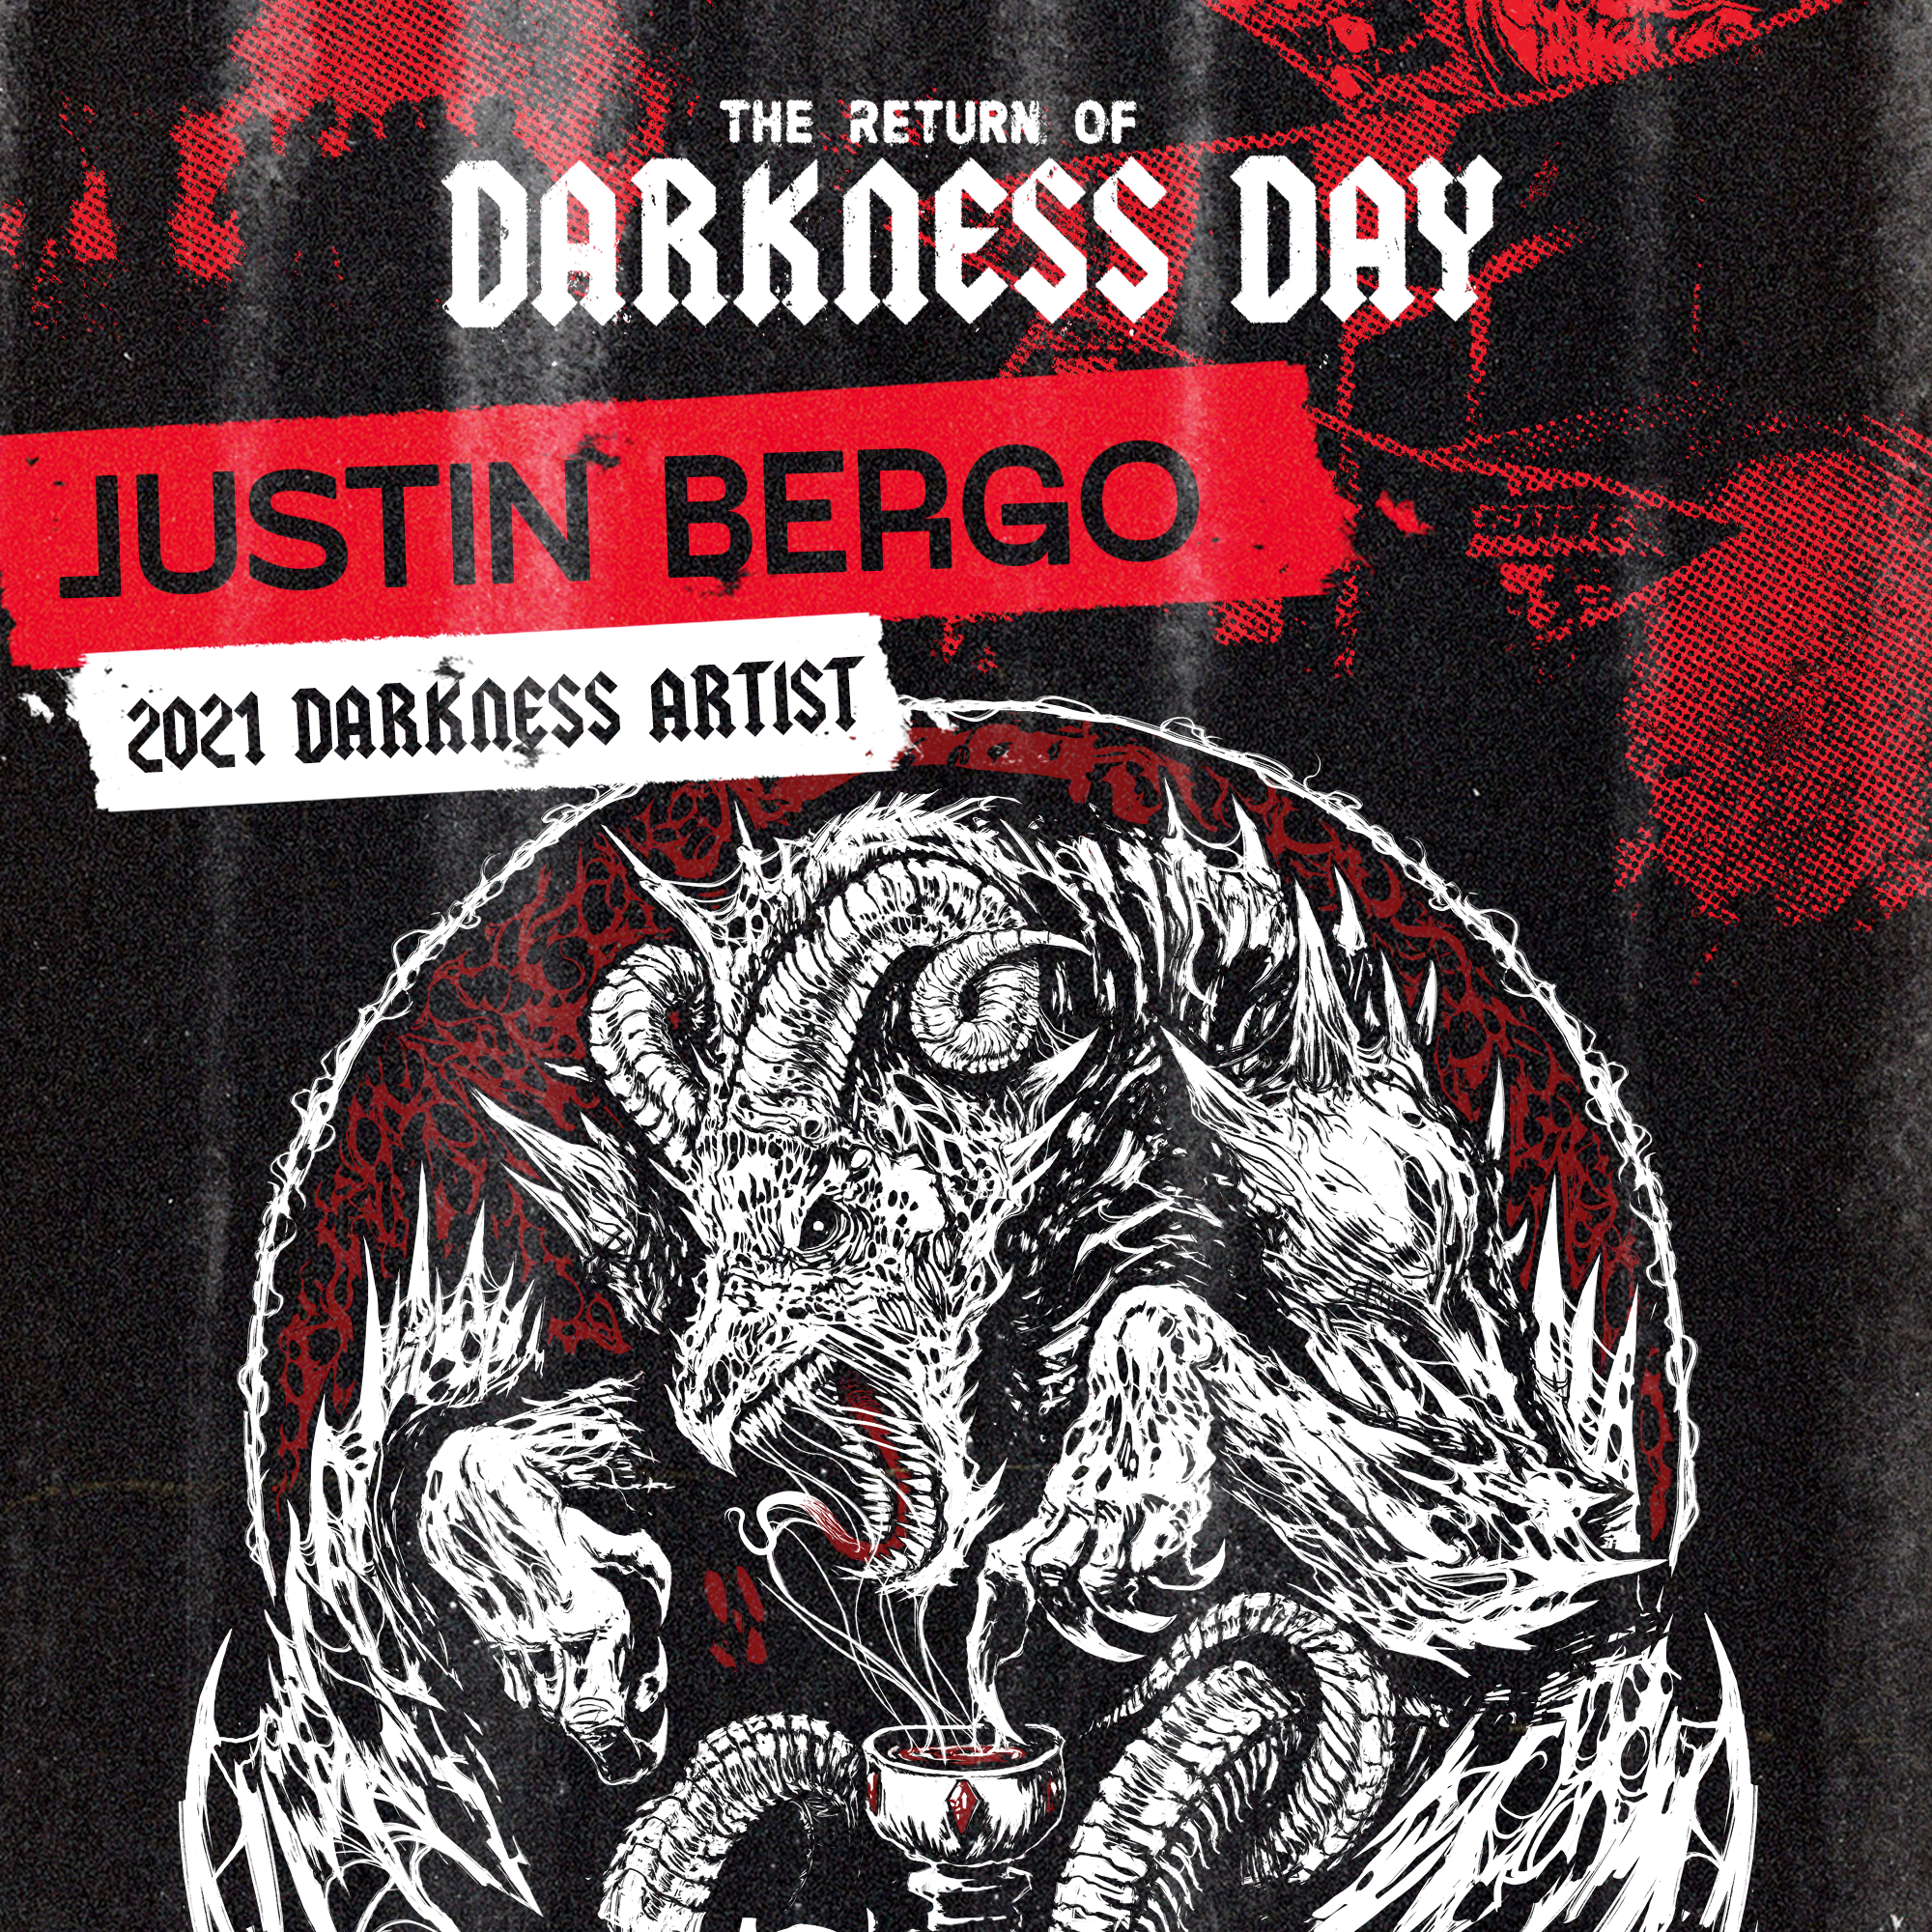 Surly_DarknessDay_JustinBergo_1x1_2022